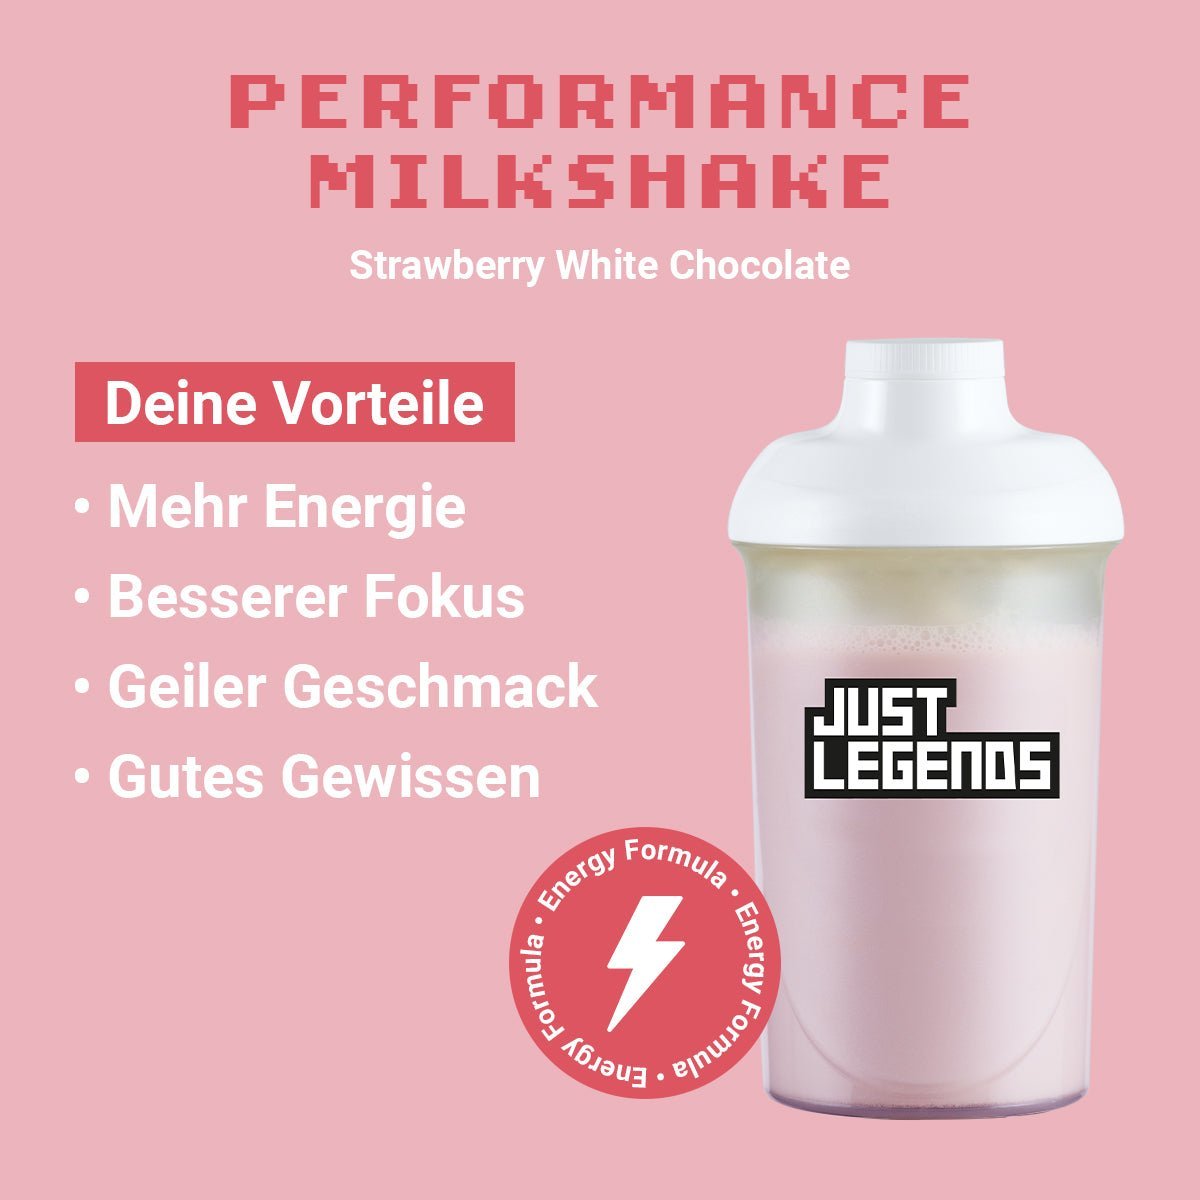 Just Legends Performance Milkshake Strawberry White Chocolate | Funktionaler, veganer Performance Milkshake auf Pulverbasis ohne Zucker, mit wenig Kalorien, vielen Vitaminen und natürlichen Aromen.